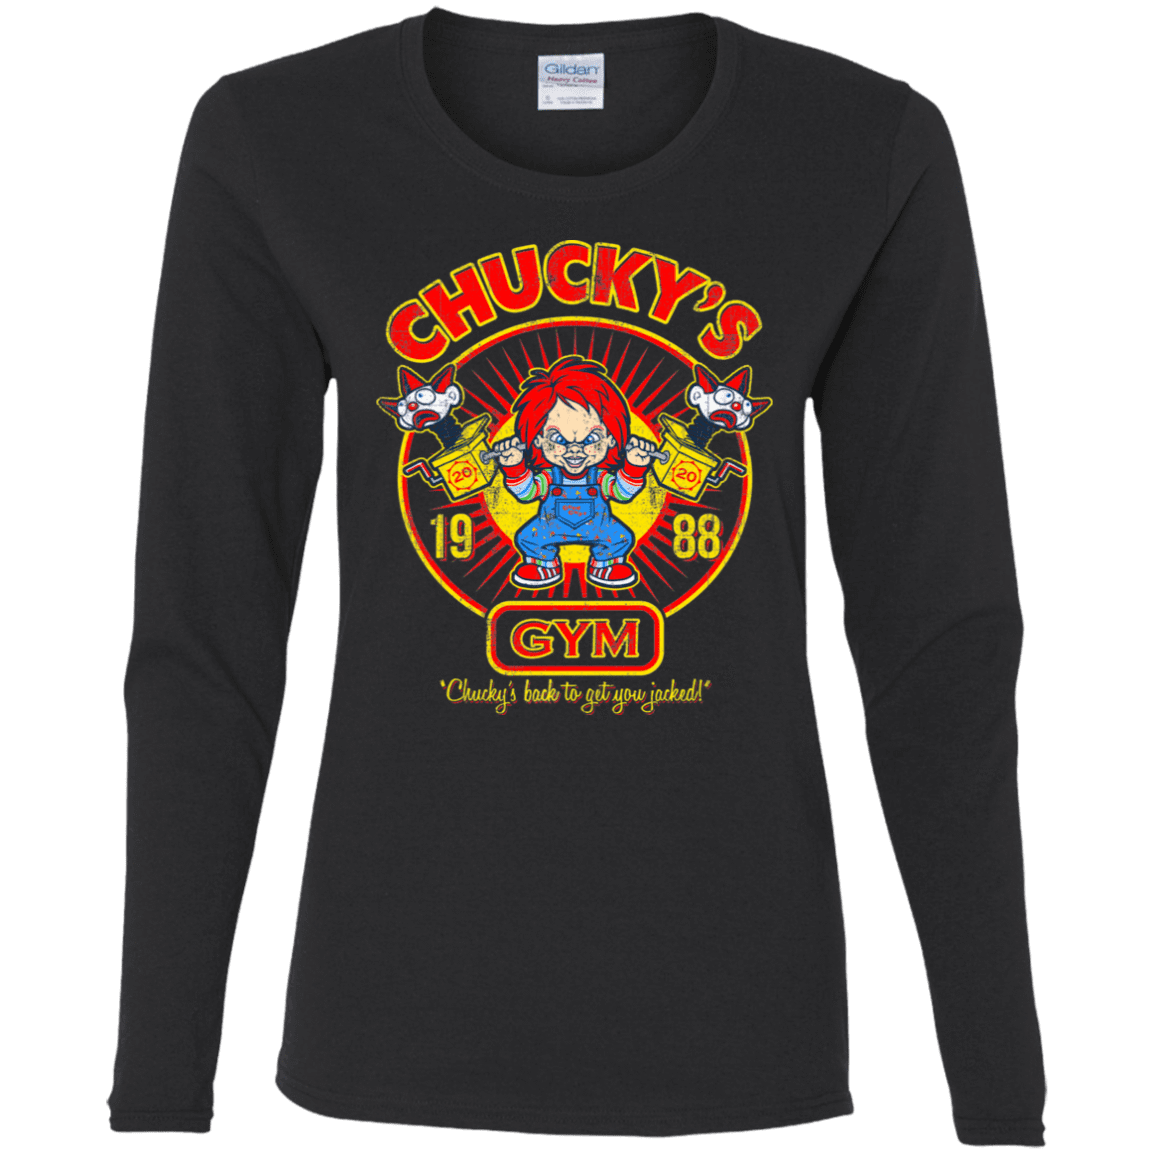 T-Shirts Black / S Chucky's Gym Women's Long Sleeve T-Shirt